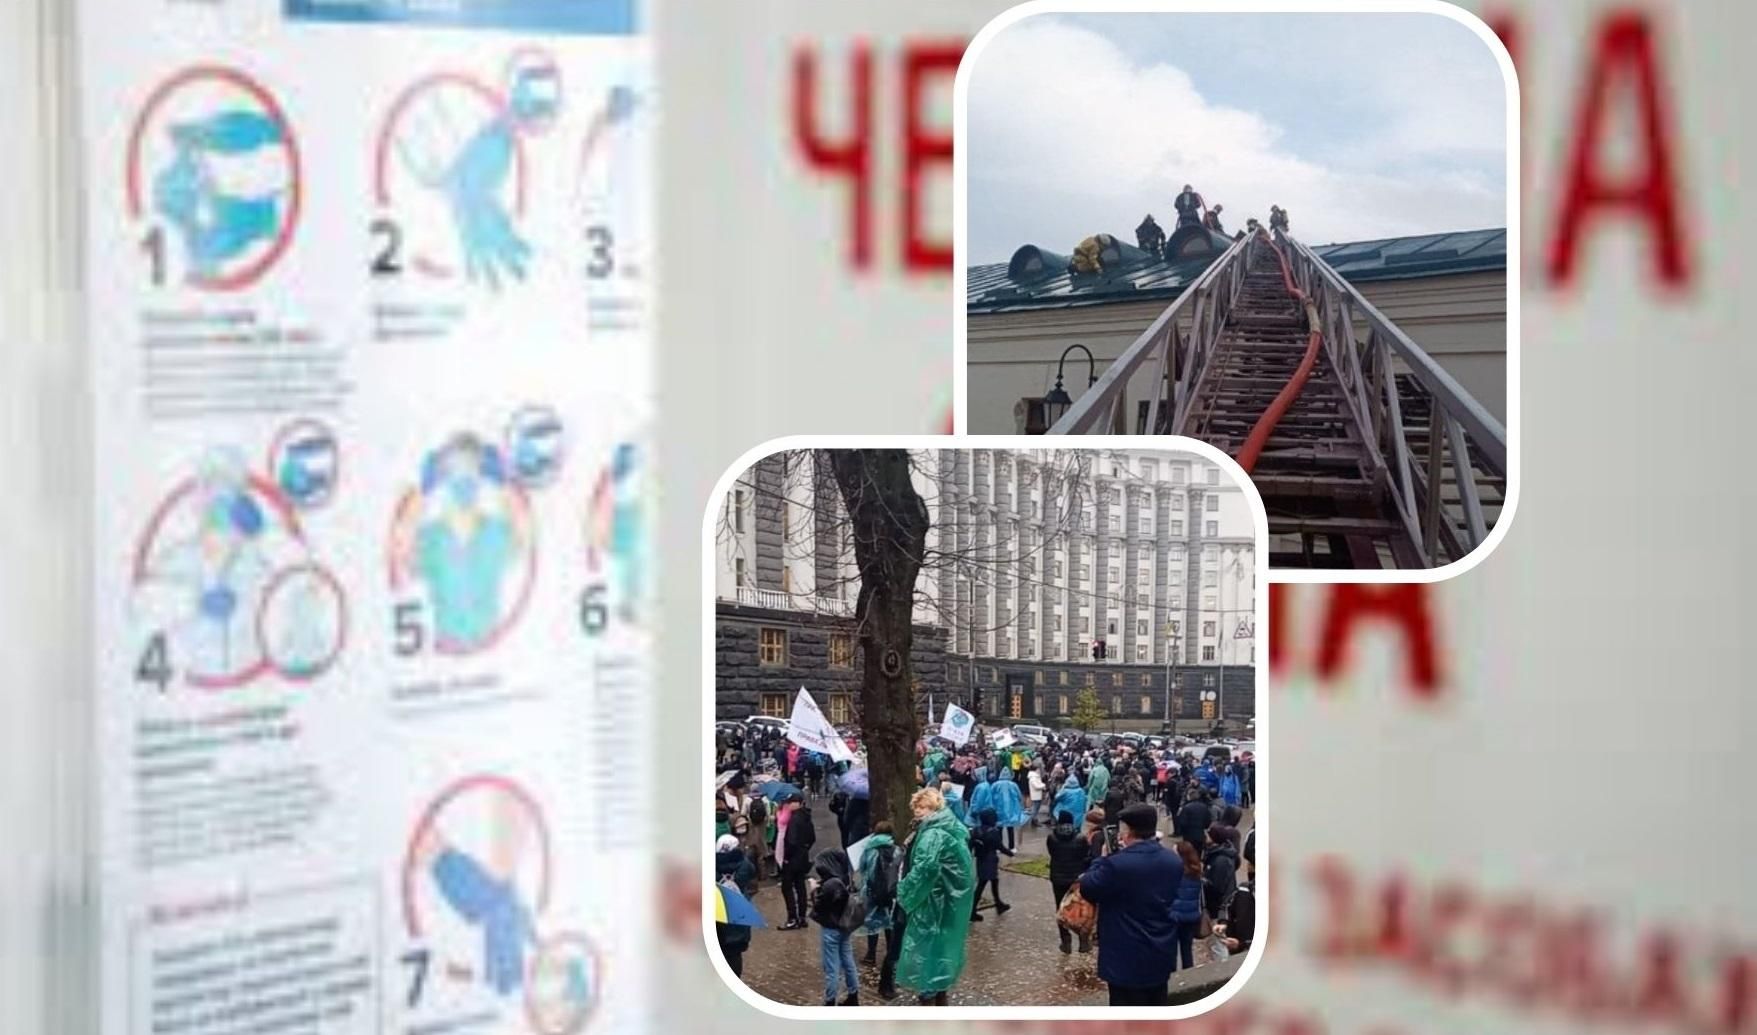 Червона зона, "марш антивакцинаторів" і пожежа у лаврі: головні новини Києва за тиждень